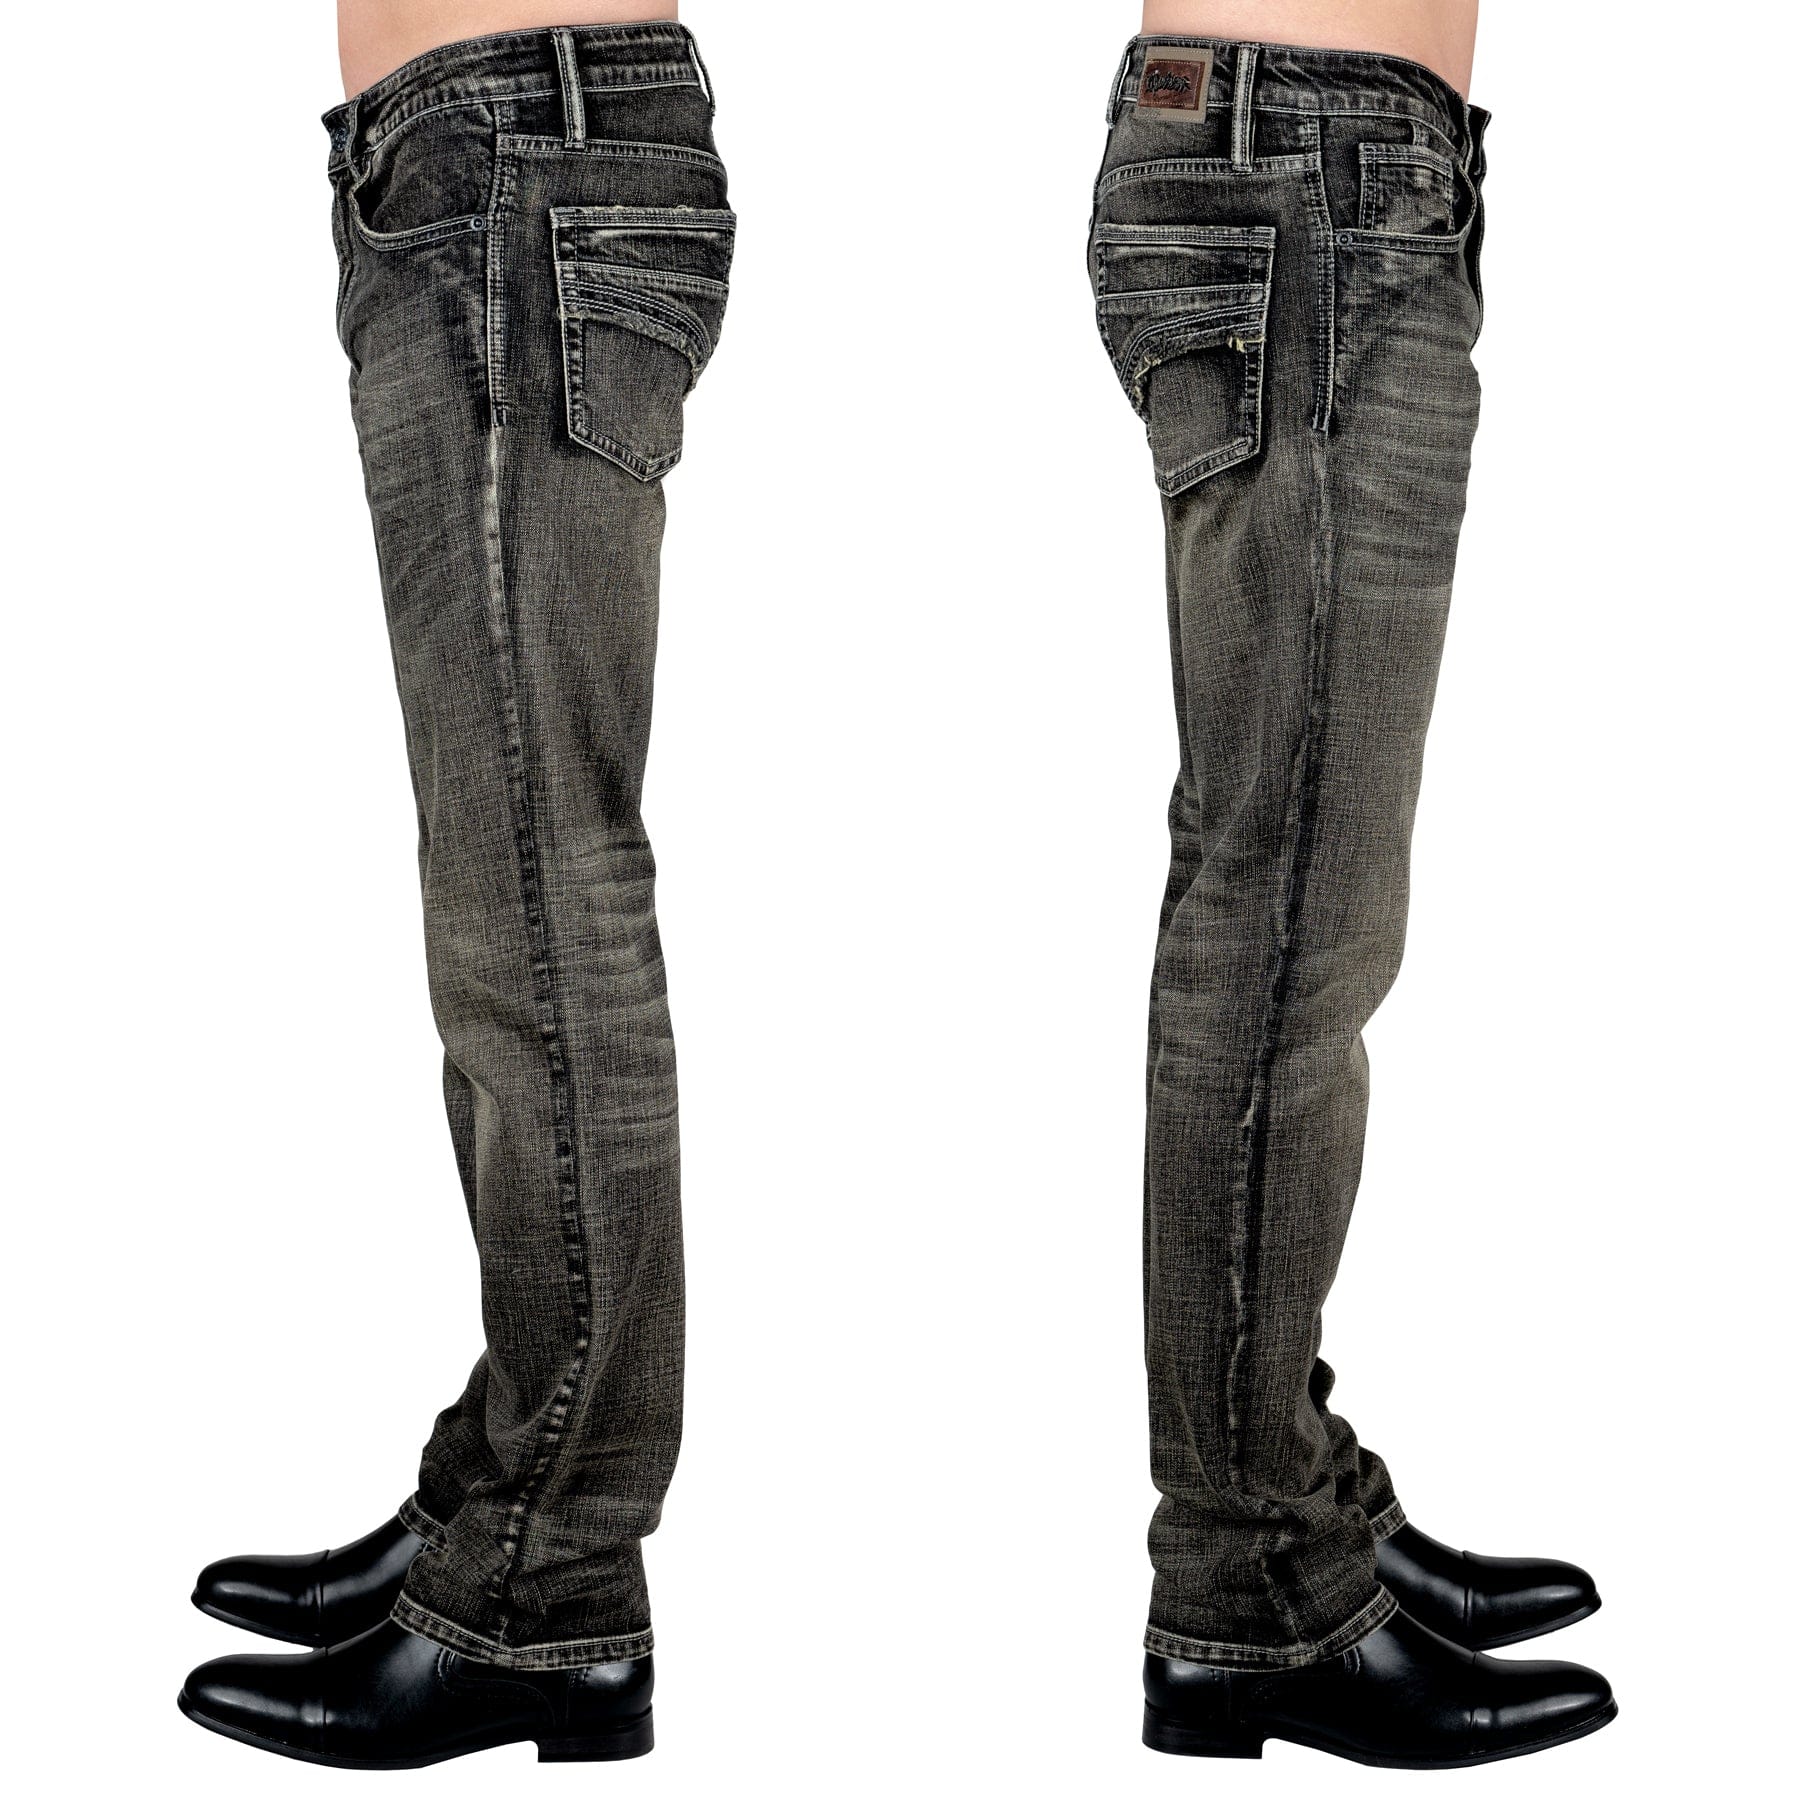 Essentials Collection Pants Trailblazer Jeans - Vintage Black